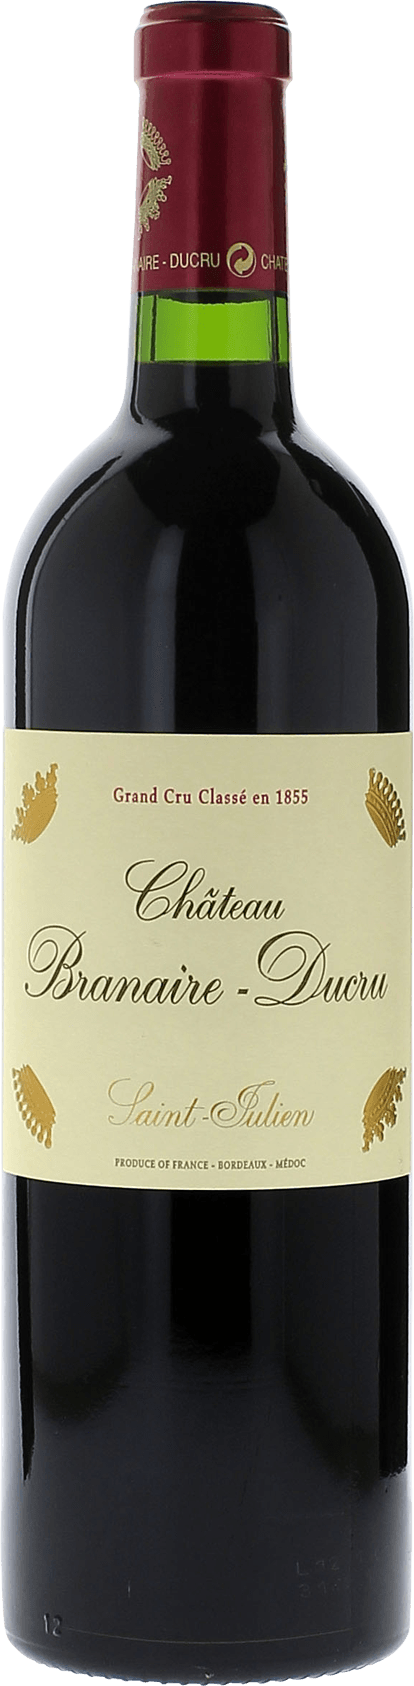 Branaire ducru 1996 4me Grand cru class Saint-Julien, Bordeaux rouge